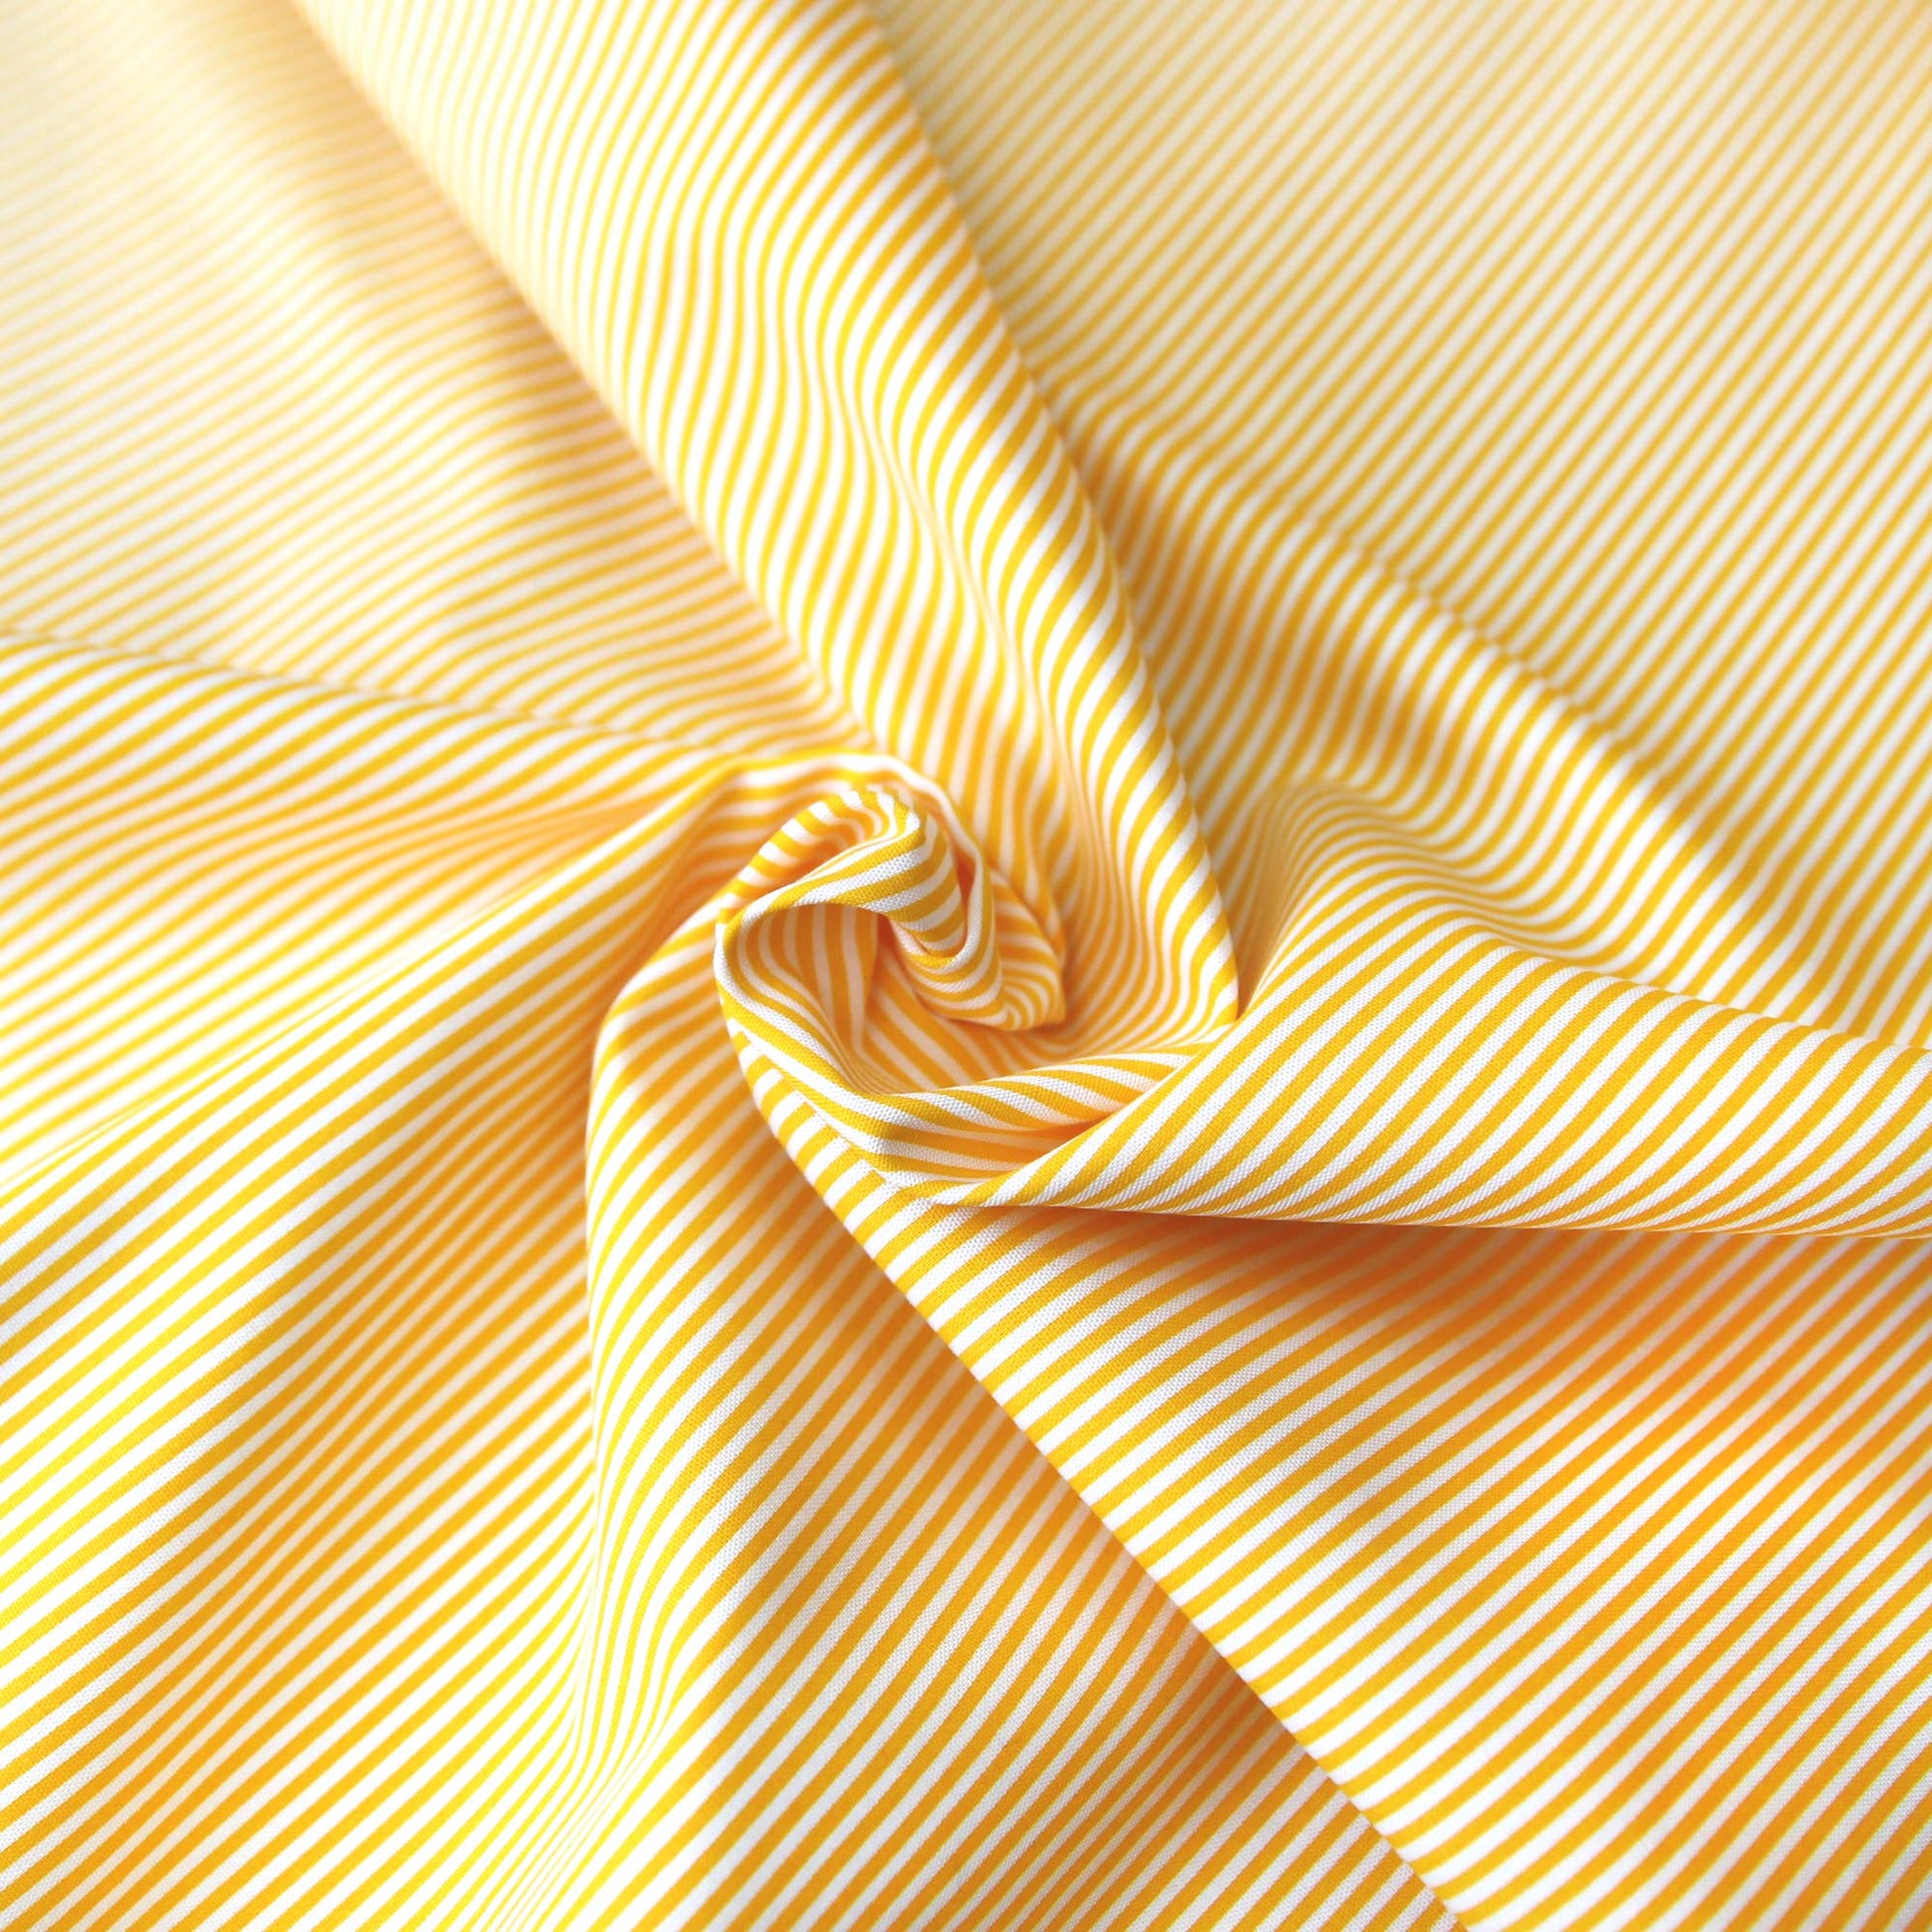 Baumwollstoff mit Linien / Popeline " 0,2 cm schmale weiße Streifen auf gelb" - Patchwork 100% Baumwolle dottergelb - Stoffe Kudellino